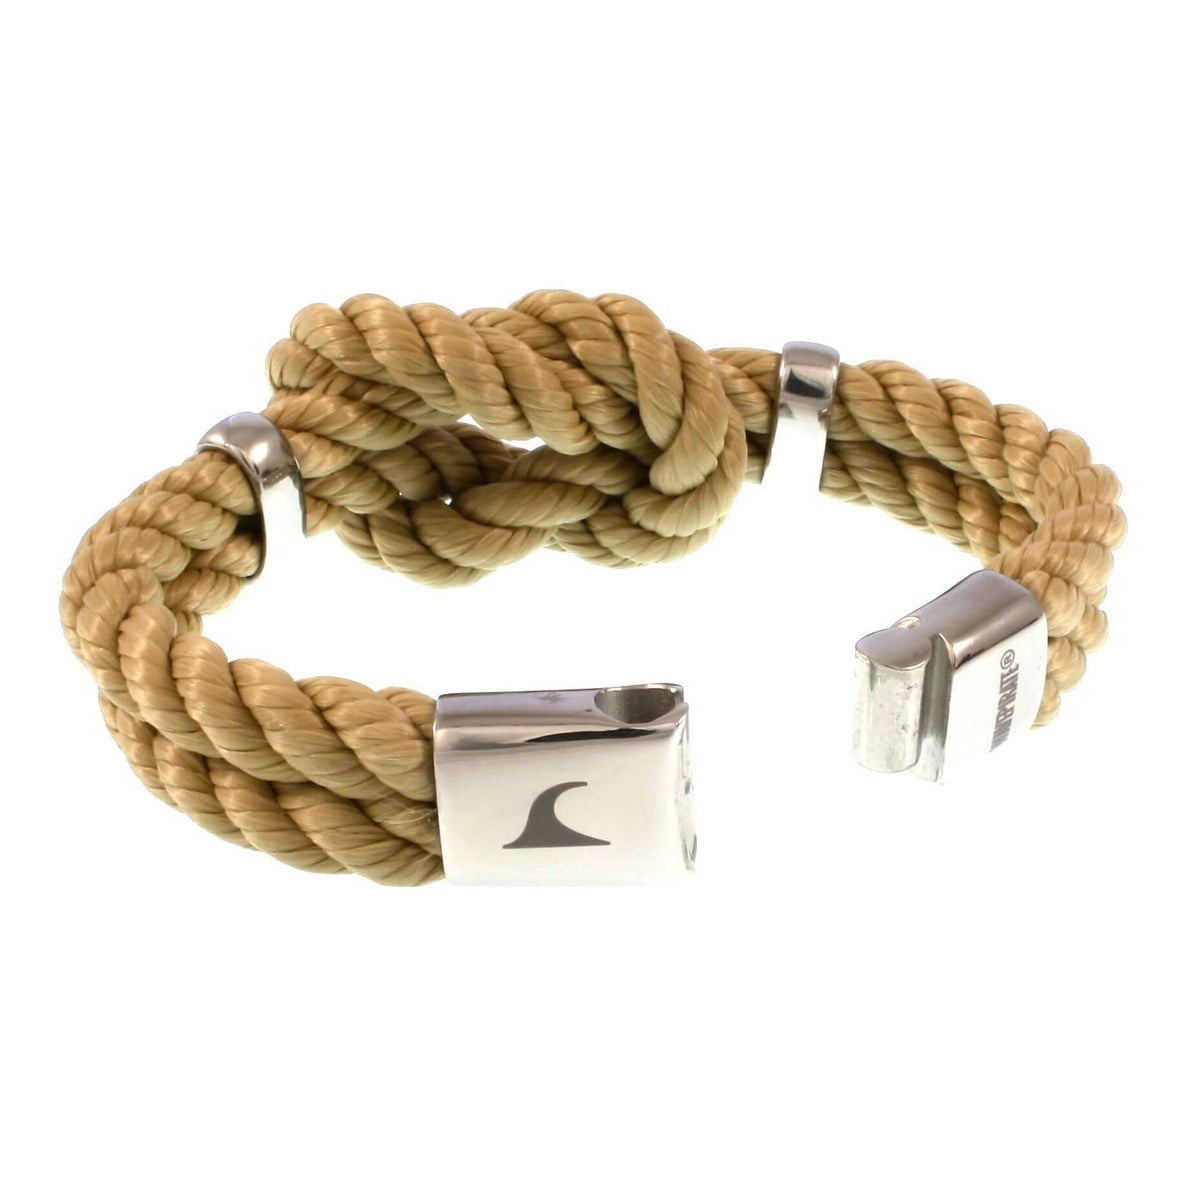 Damen-Segeltau-armband-pure-beige-natur-silber-geflochten-kordel-Edelstahlverschluss-offen-wavepirate-shop-k